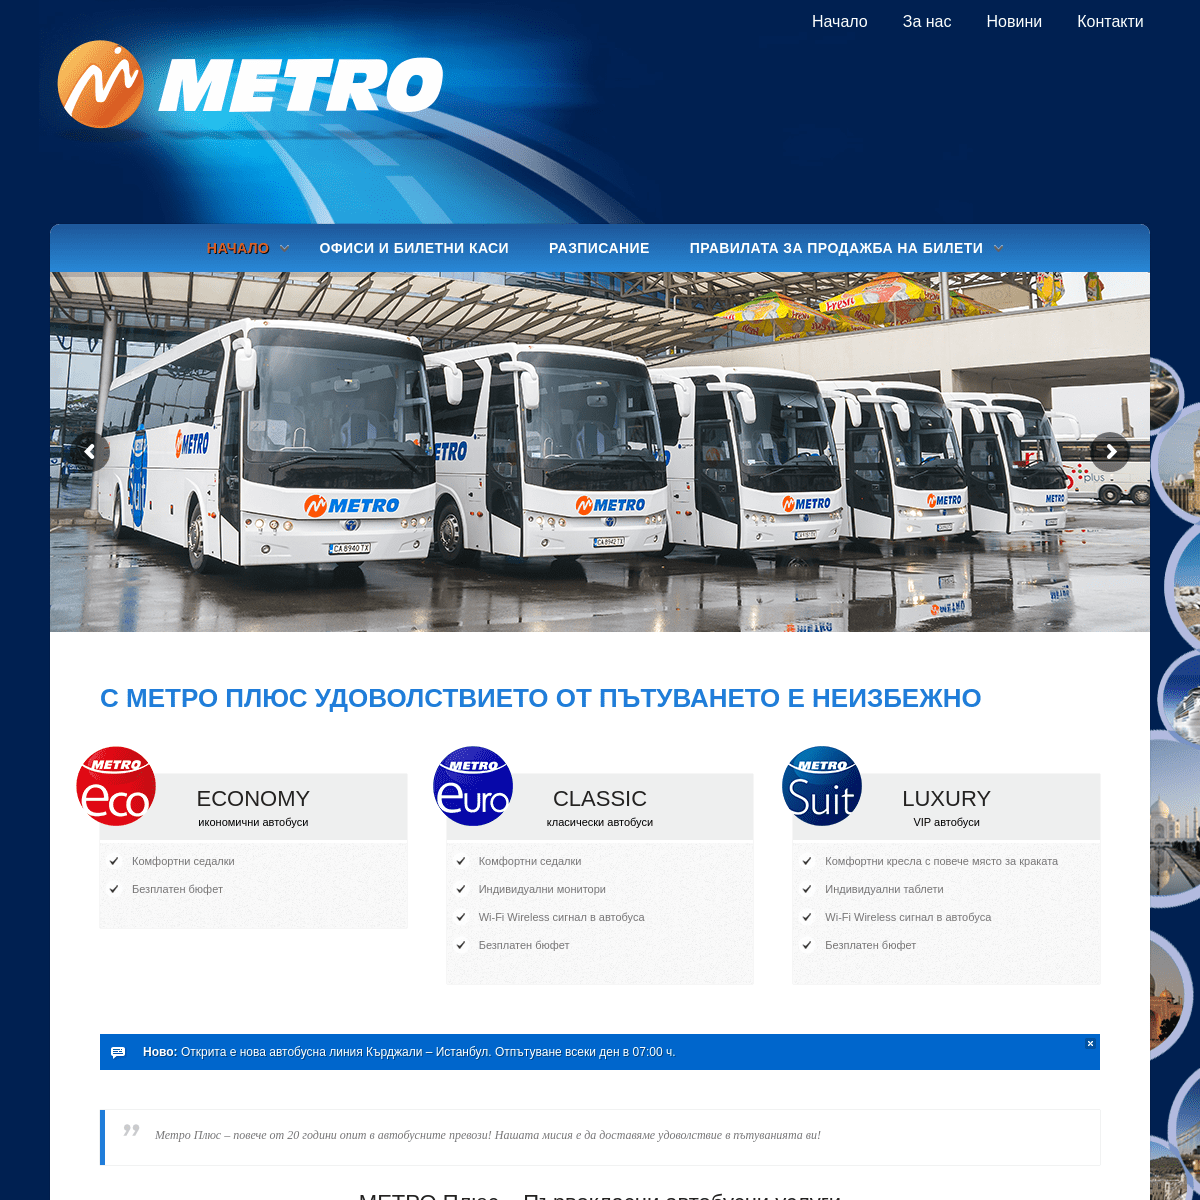 A complete backup of metrotransport.bg